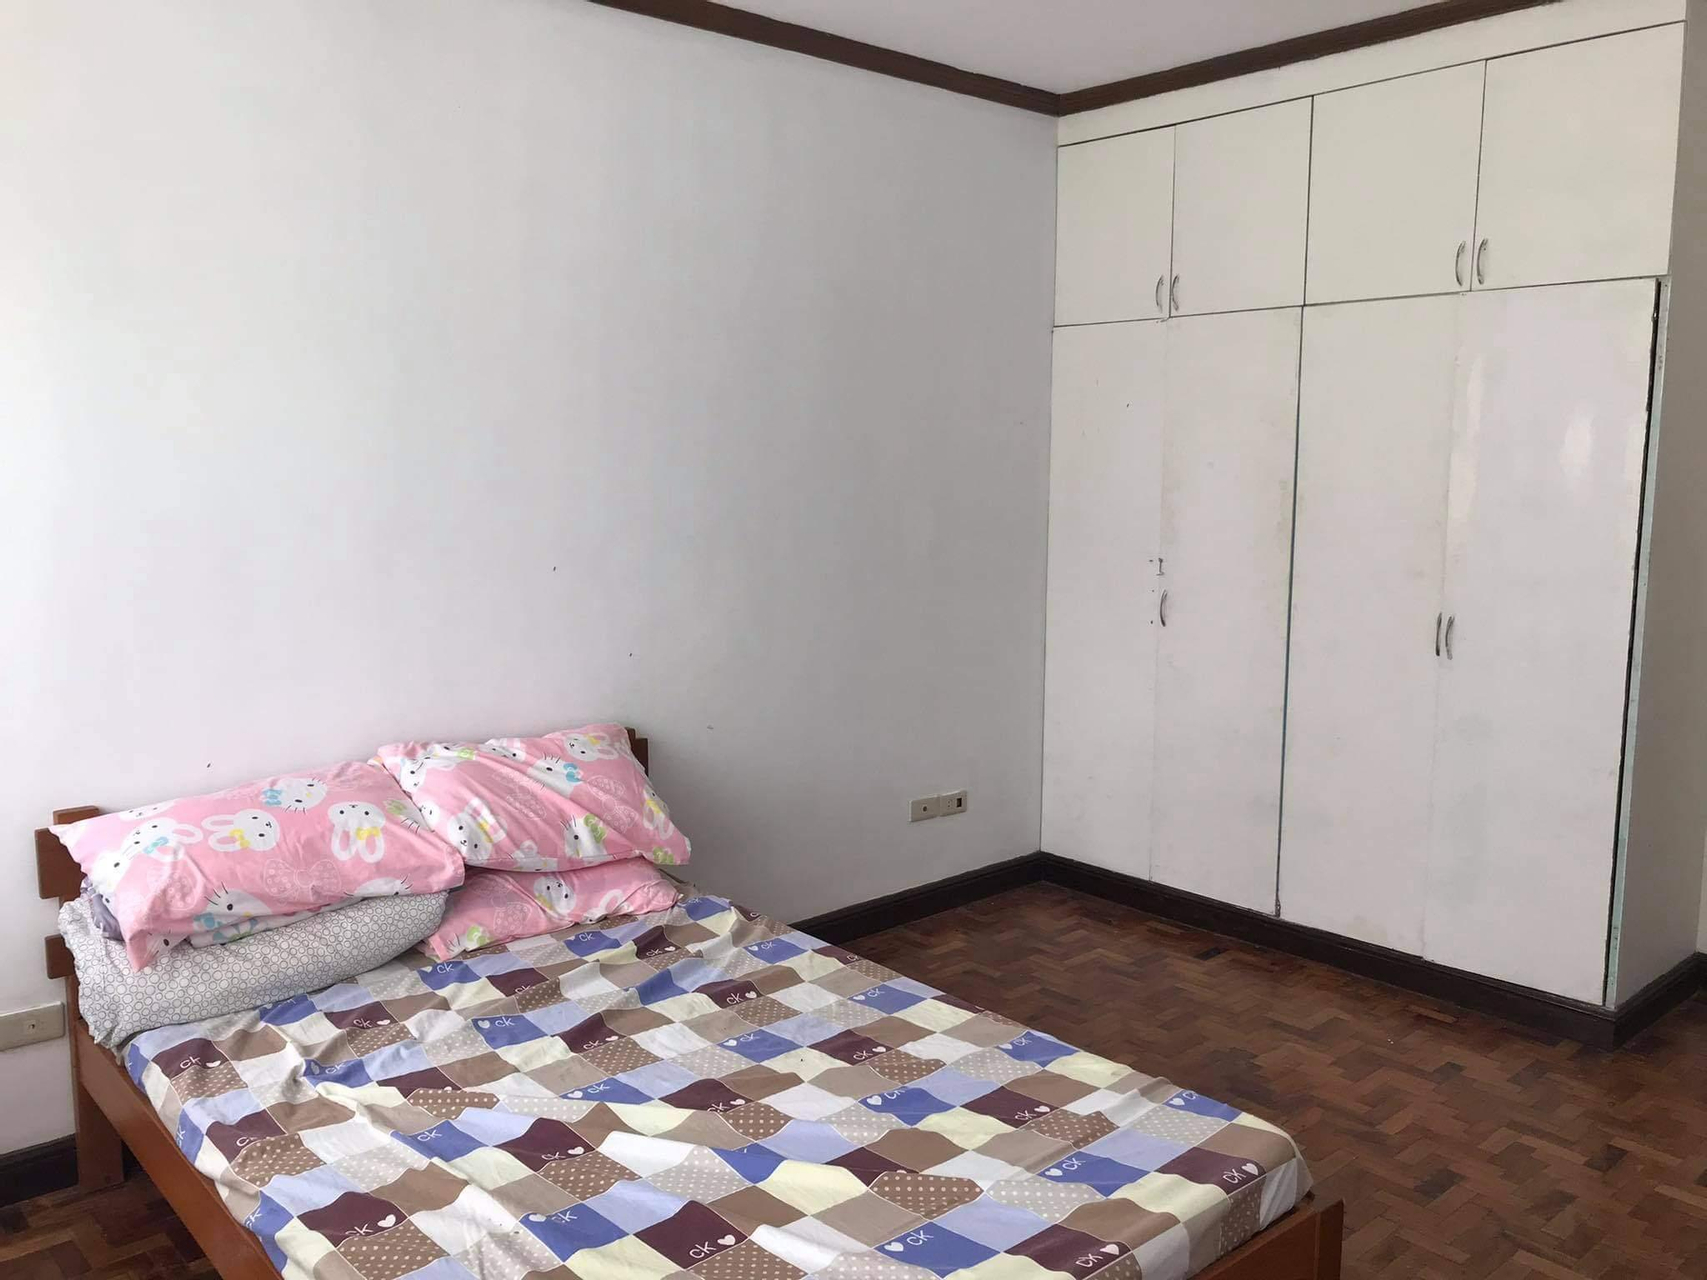 Bedroom 2, Sofichem Marketing Property, Tagaytay City